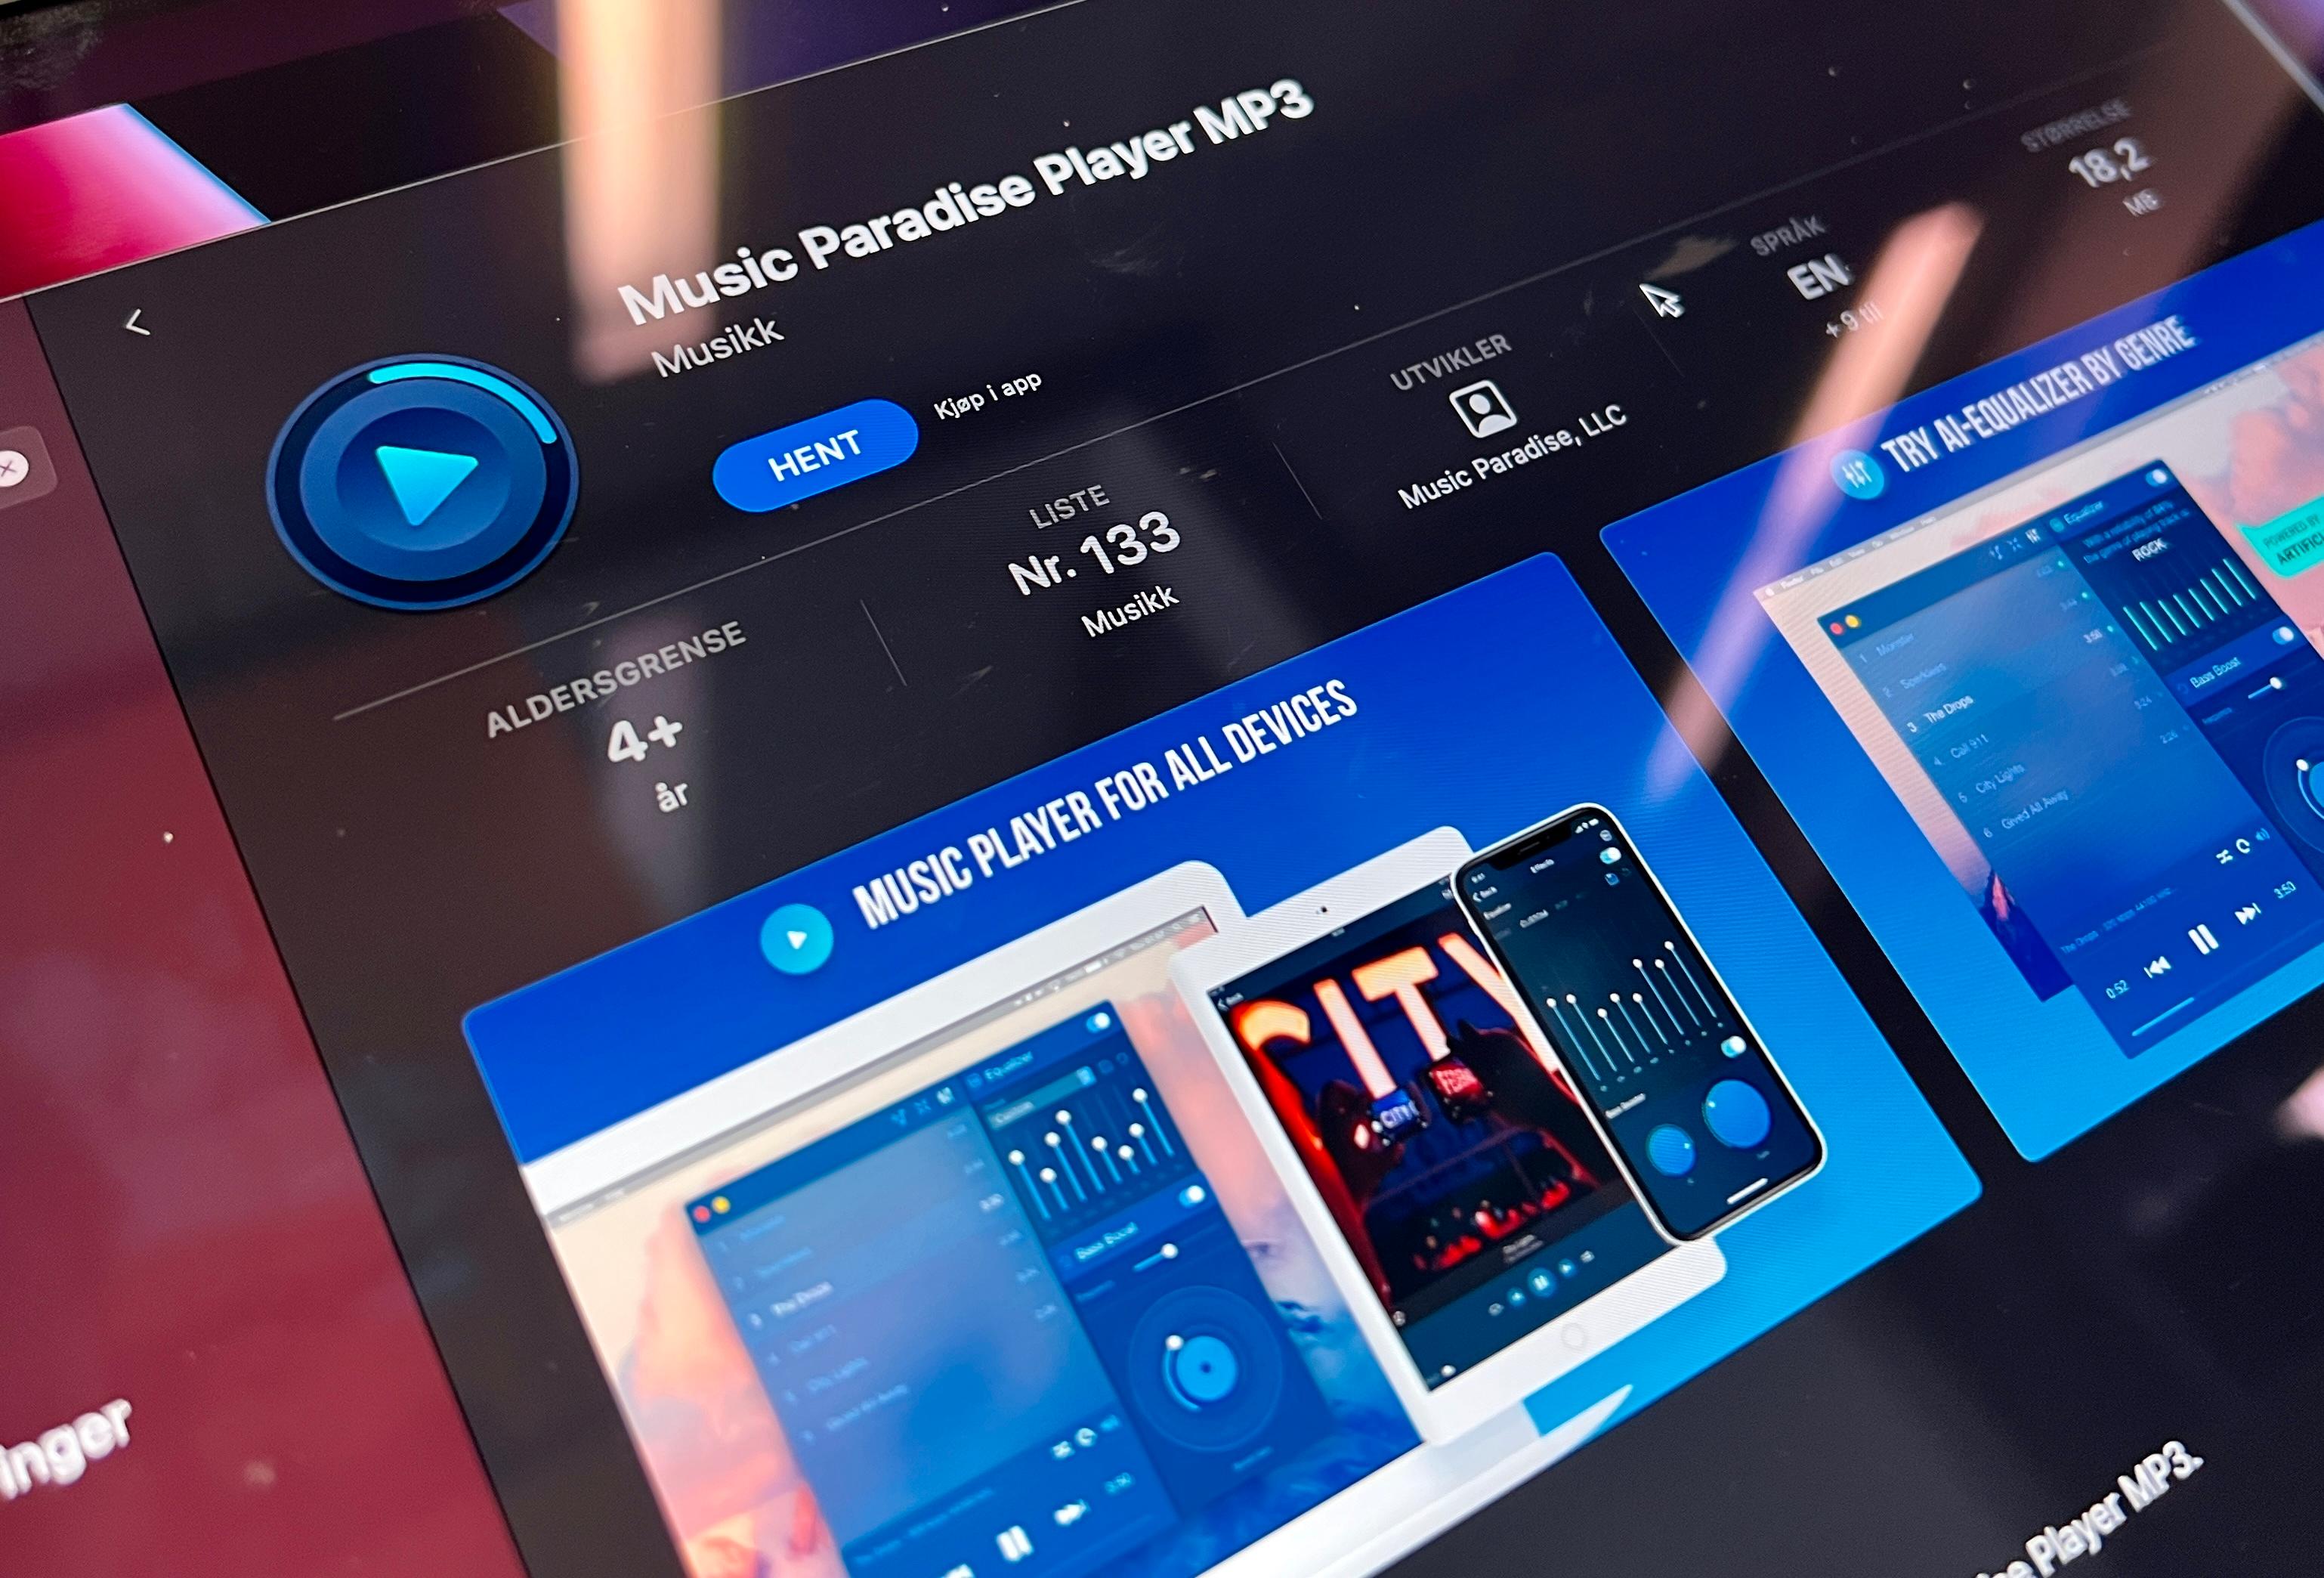 Music Paradise-spilleren er én av flere apper fra den russiske utvikleren. Flere av dem er nå borte fra App Store. Årsaken til fjerningen er ikke klar, men det er nærliggende å tro at det handler om den kreative måten de selger abonnement.